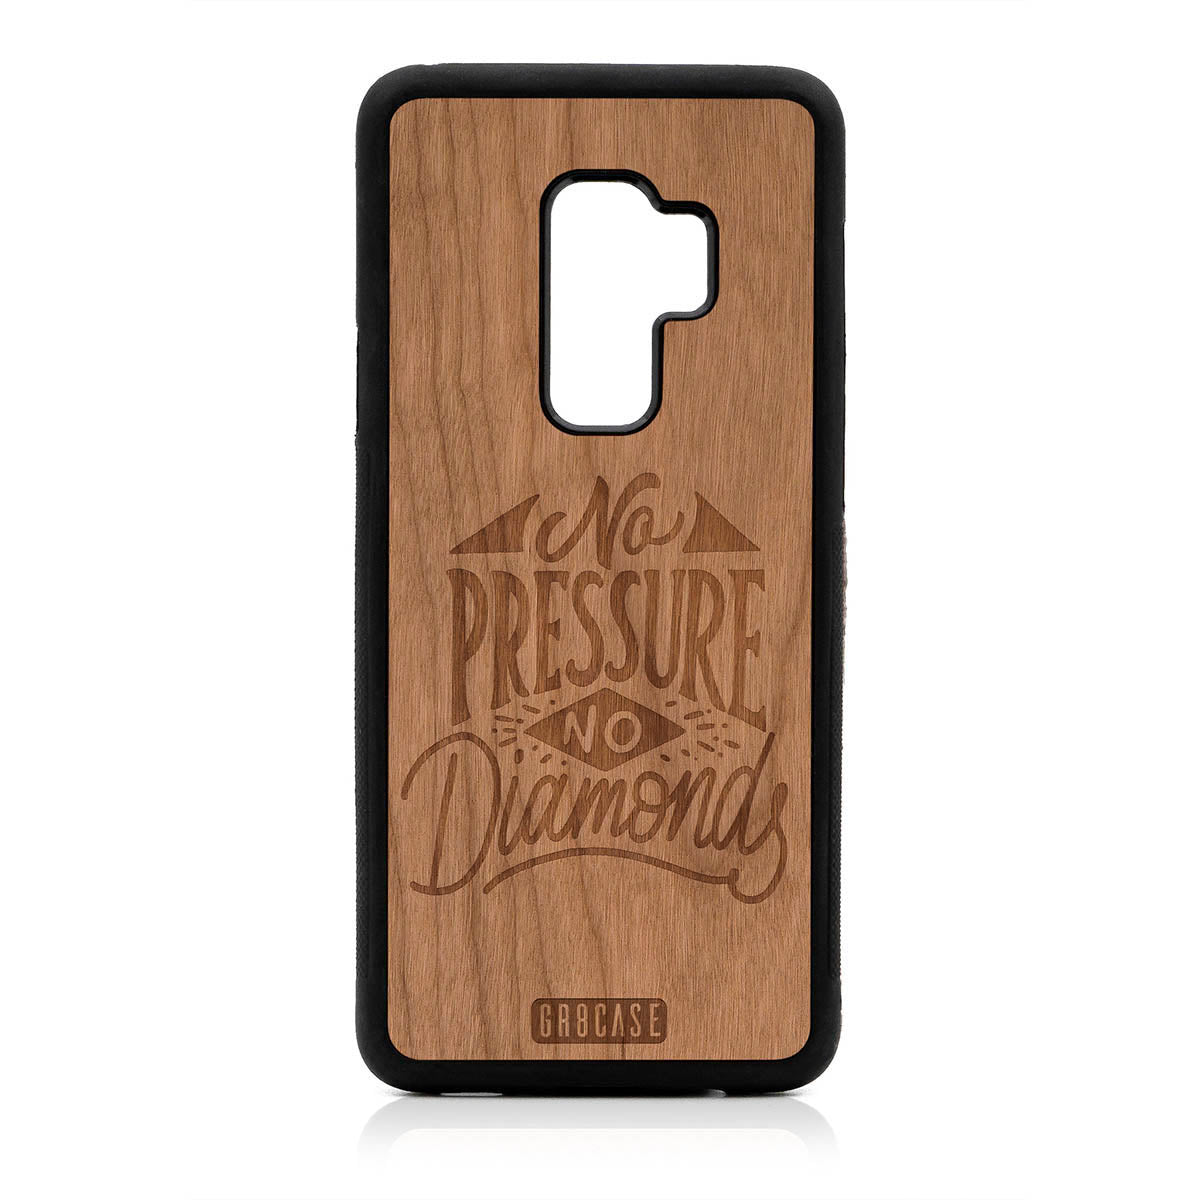 No Pressure No Diamonds Design Wood Case For Samsung Galaxy S9 Plus